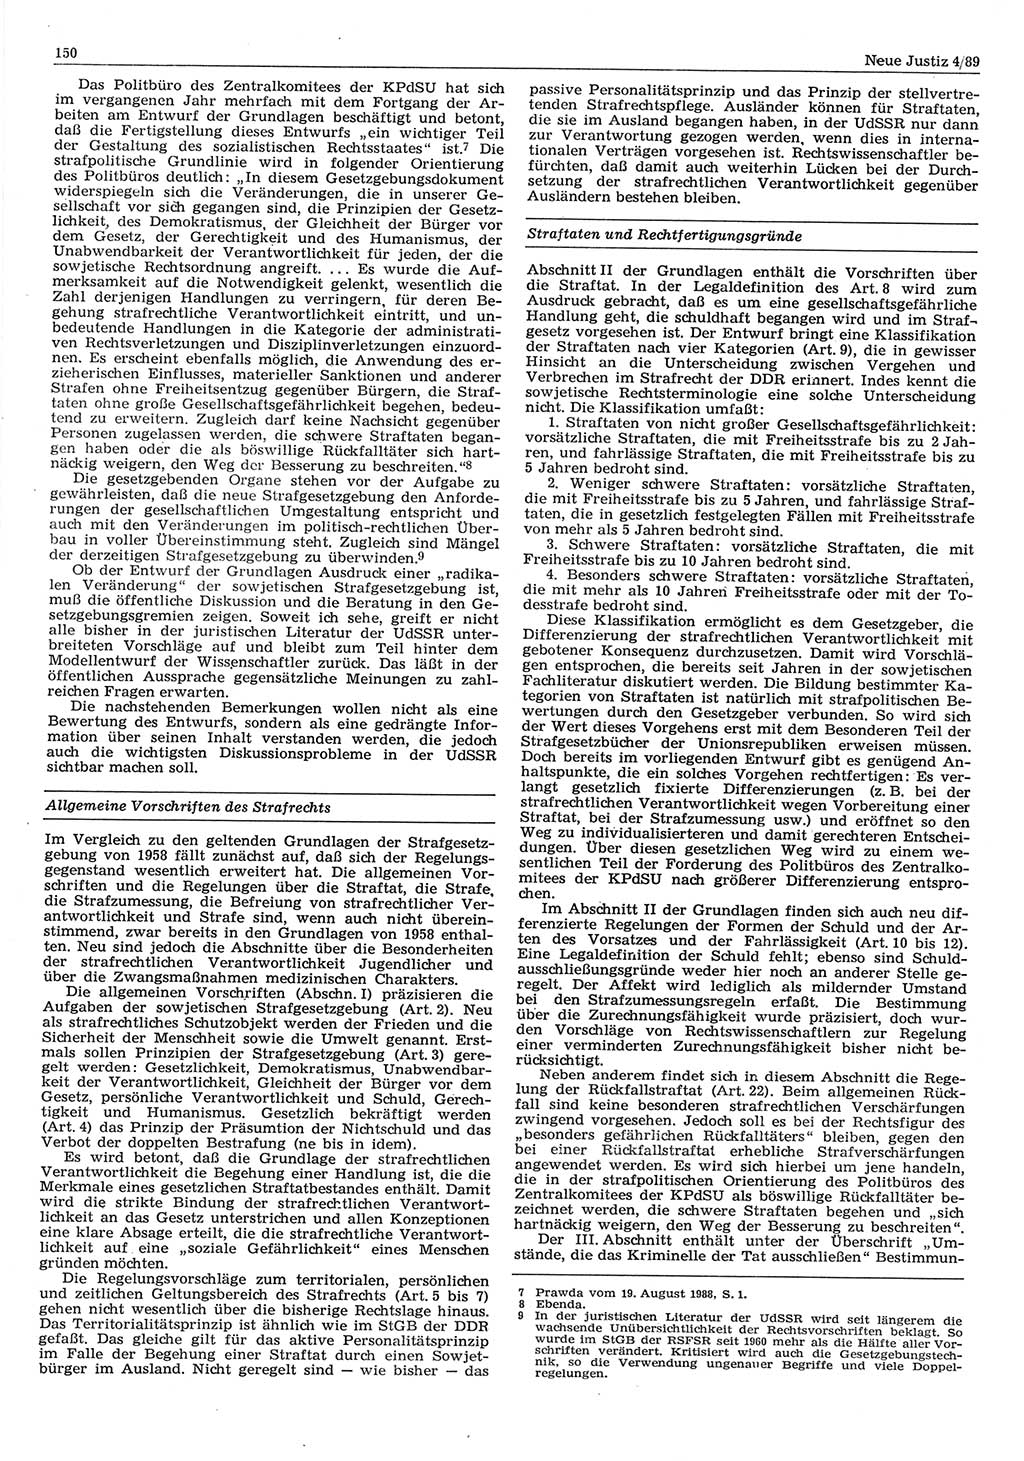 Neue Justiz (NJ), Zeitschrift für sozialistisches Recht und Gesetzlichkeit [Deutsche Demokratische Republik (DDR)], 43. Jahrgang 1989, Seite 150 (NJ DDR 1989, S. 150)